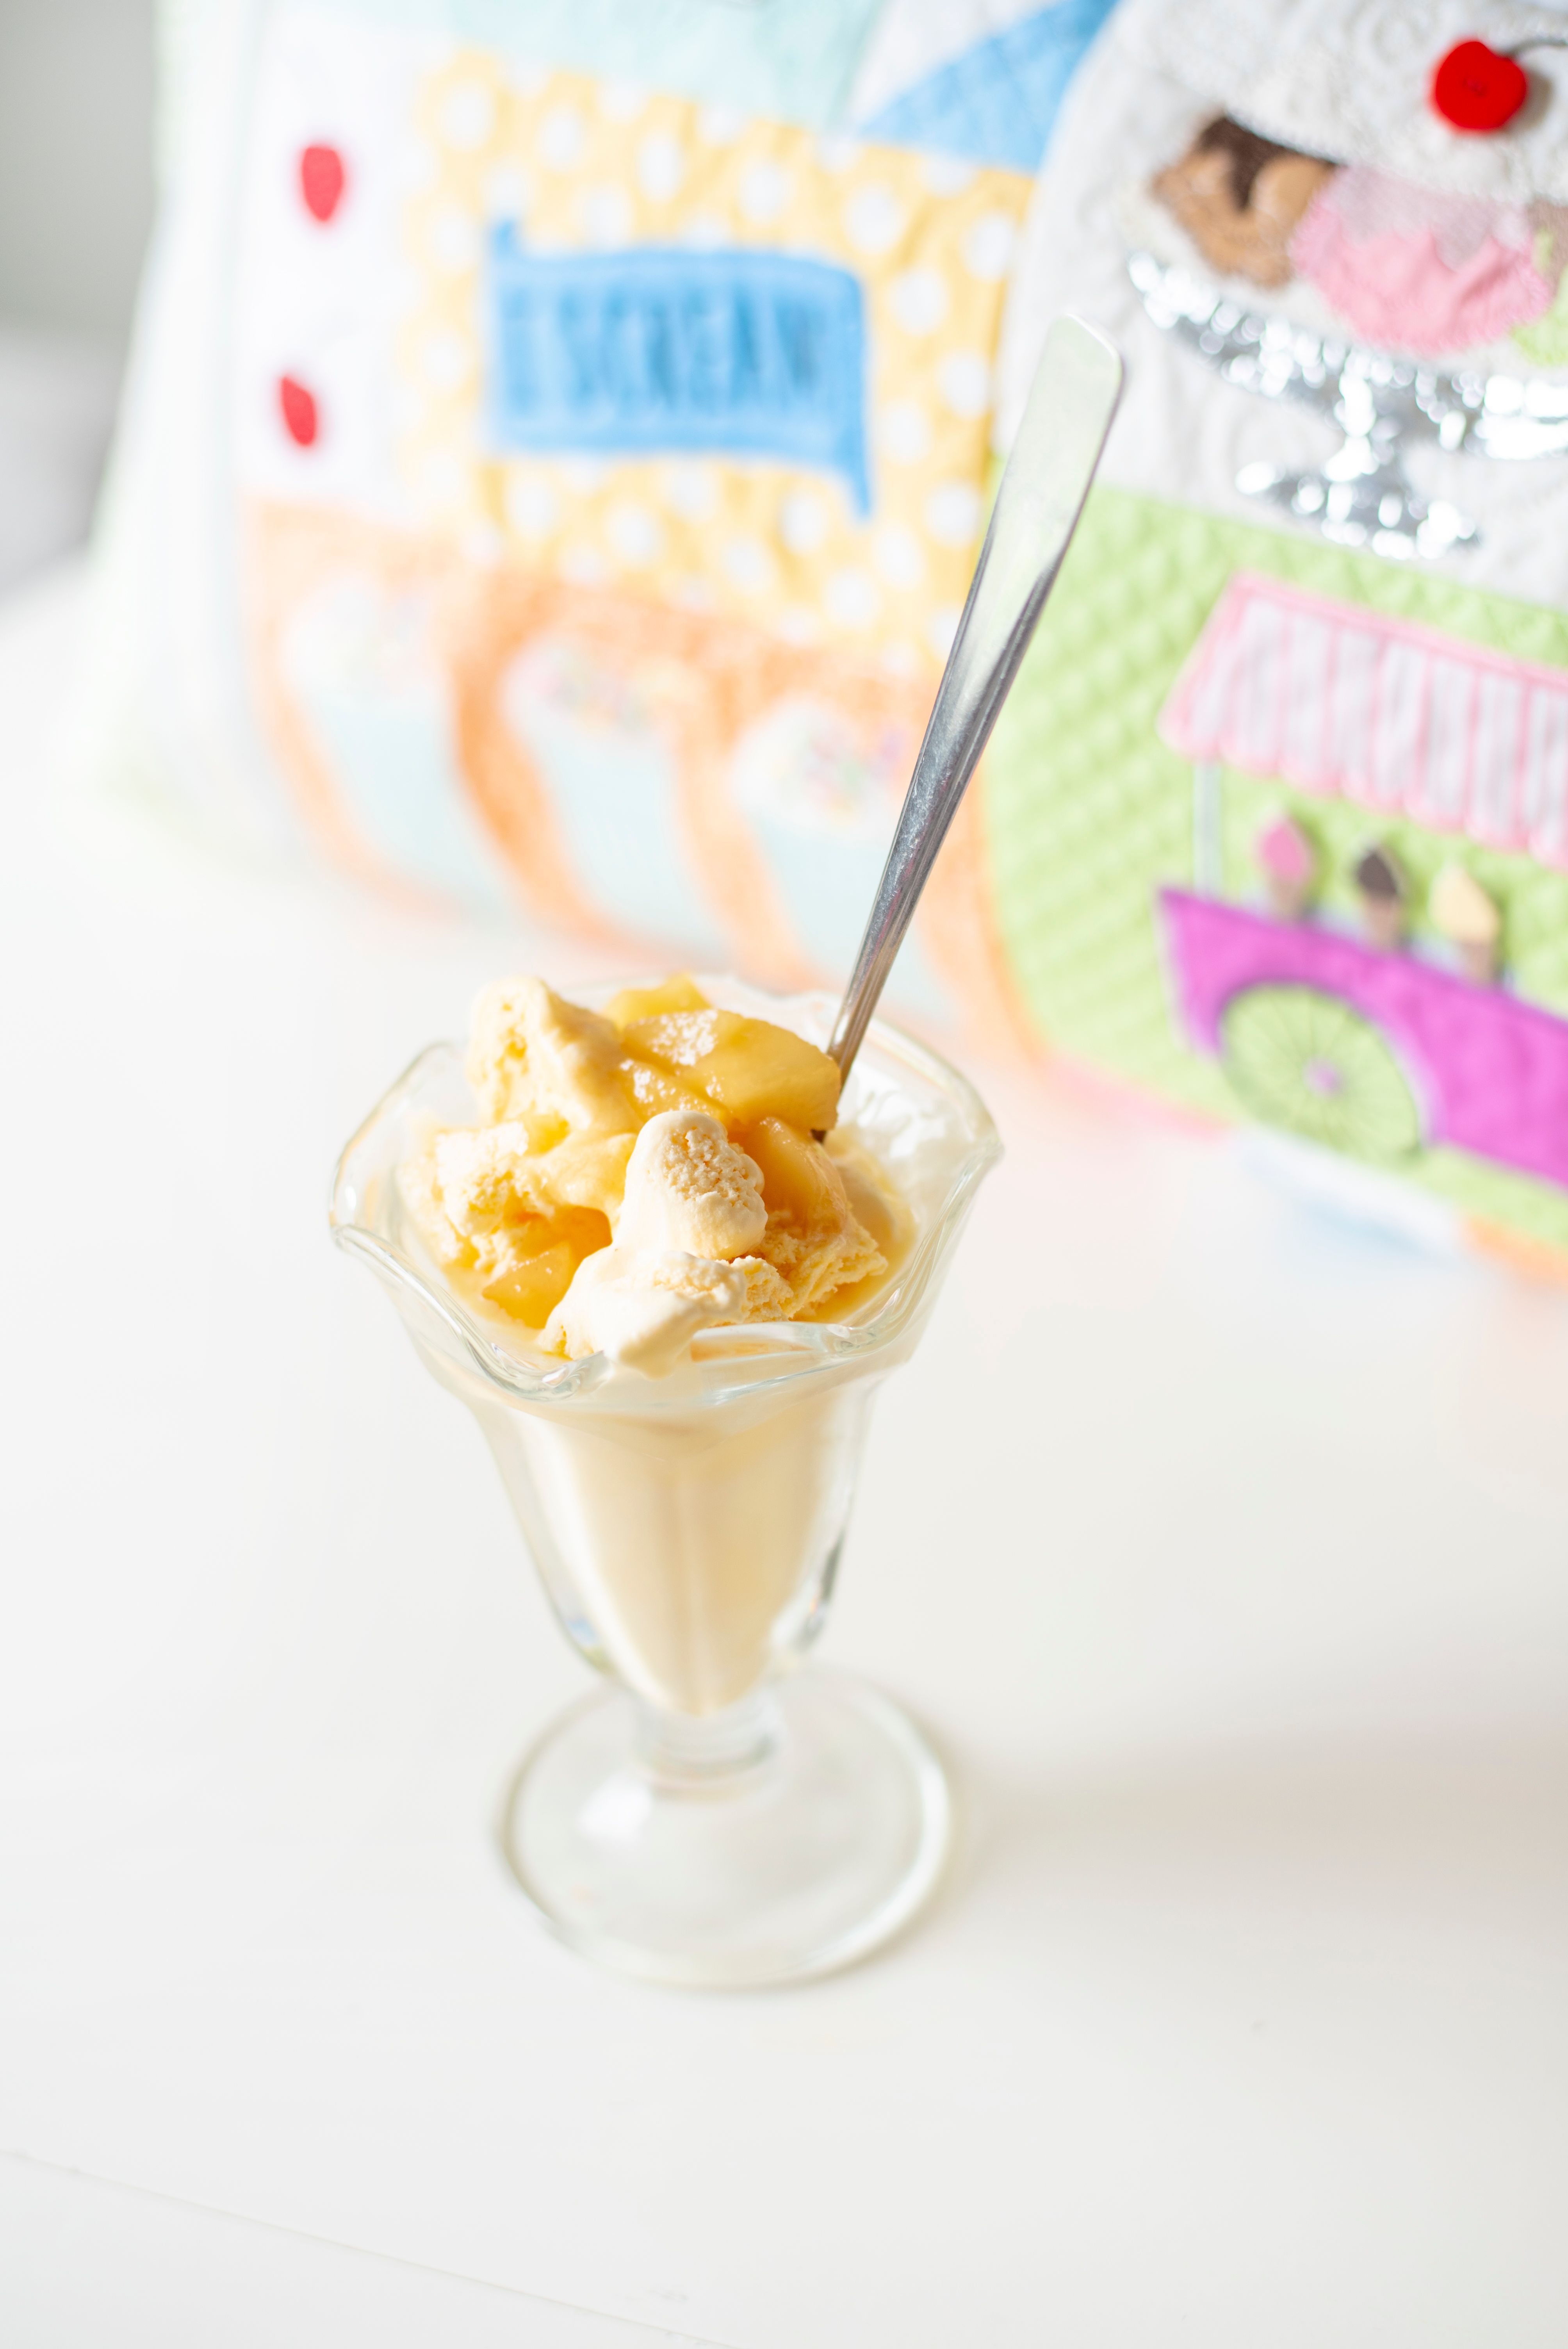 Beehive Ice Cream Scoop  Ice cream scoop, Good healthy recipes, Ice cream